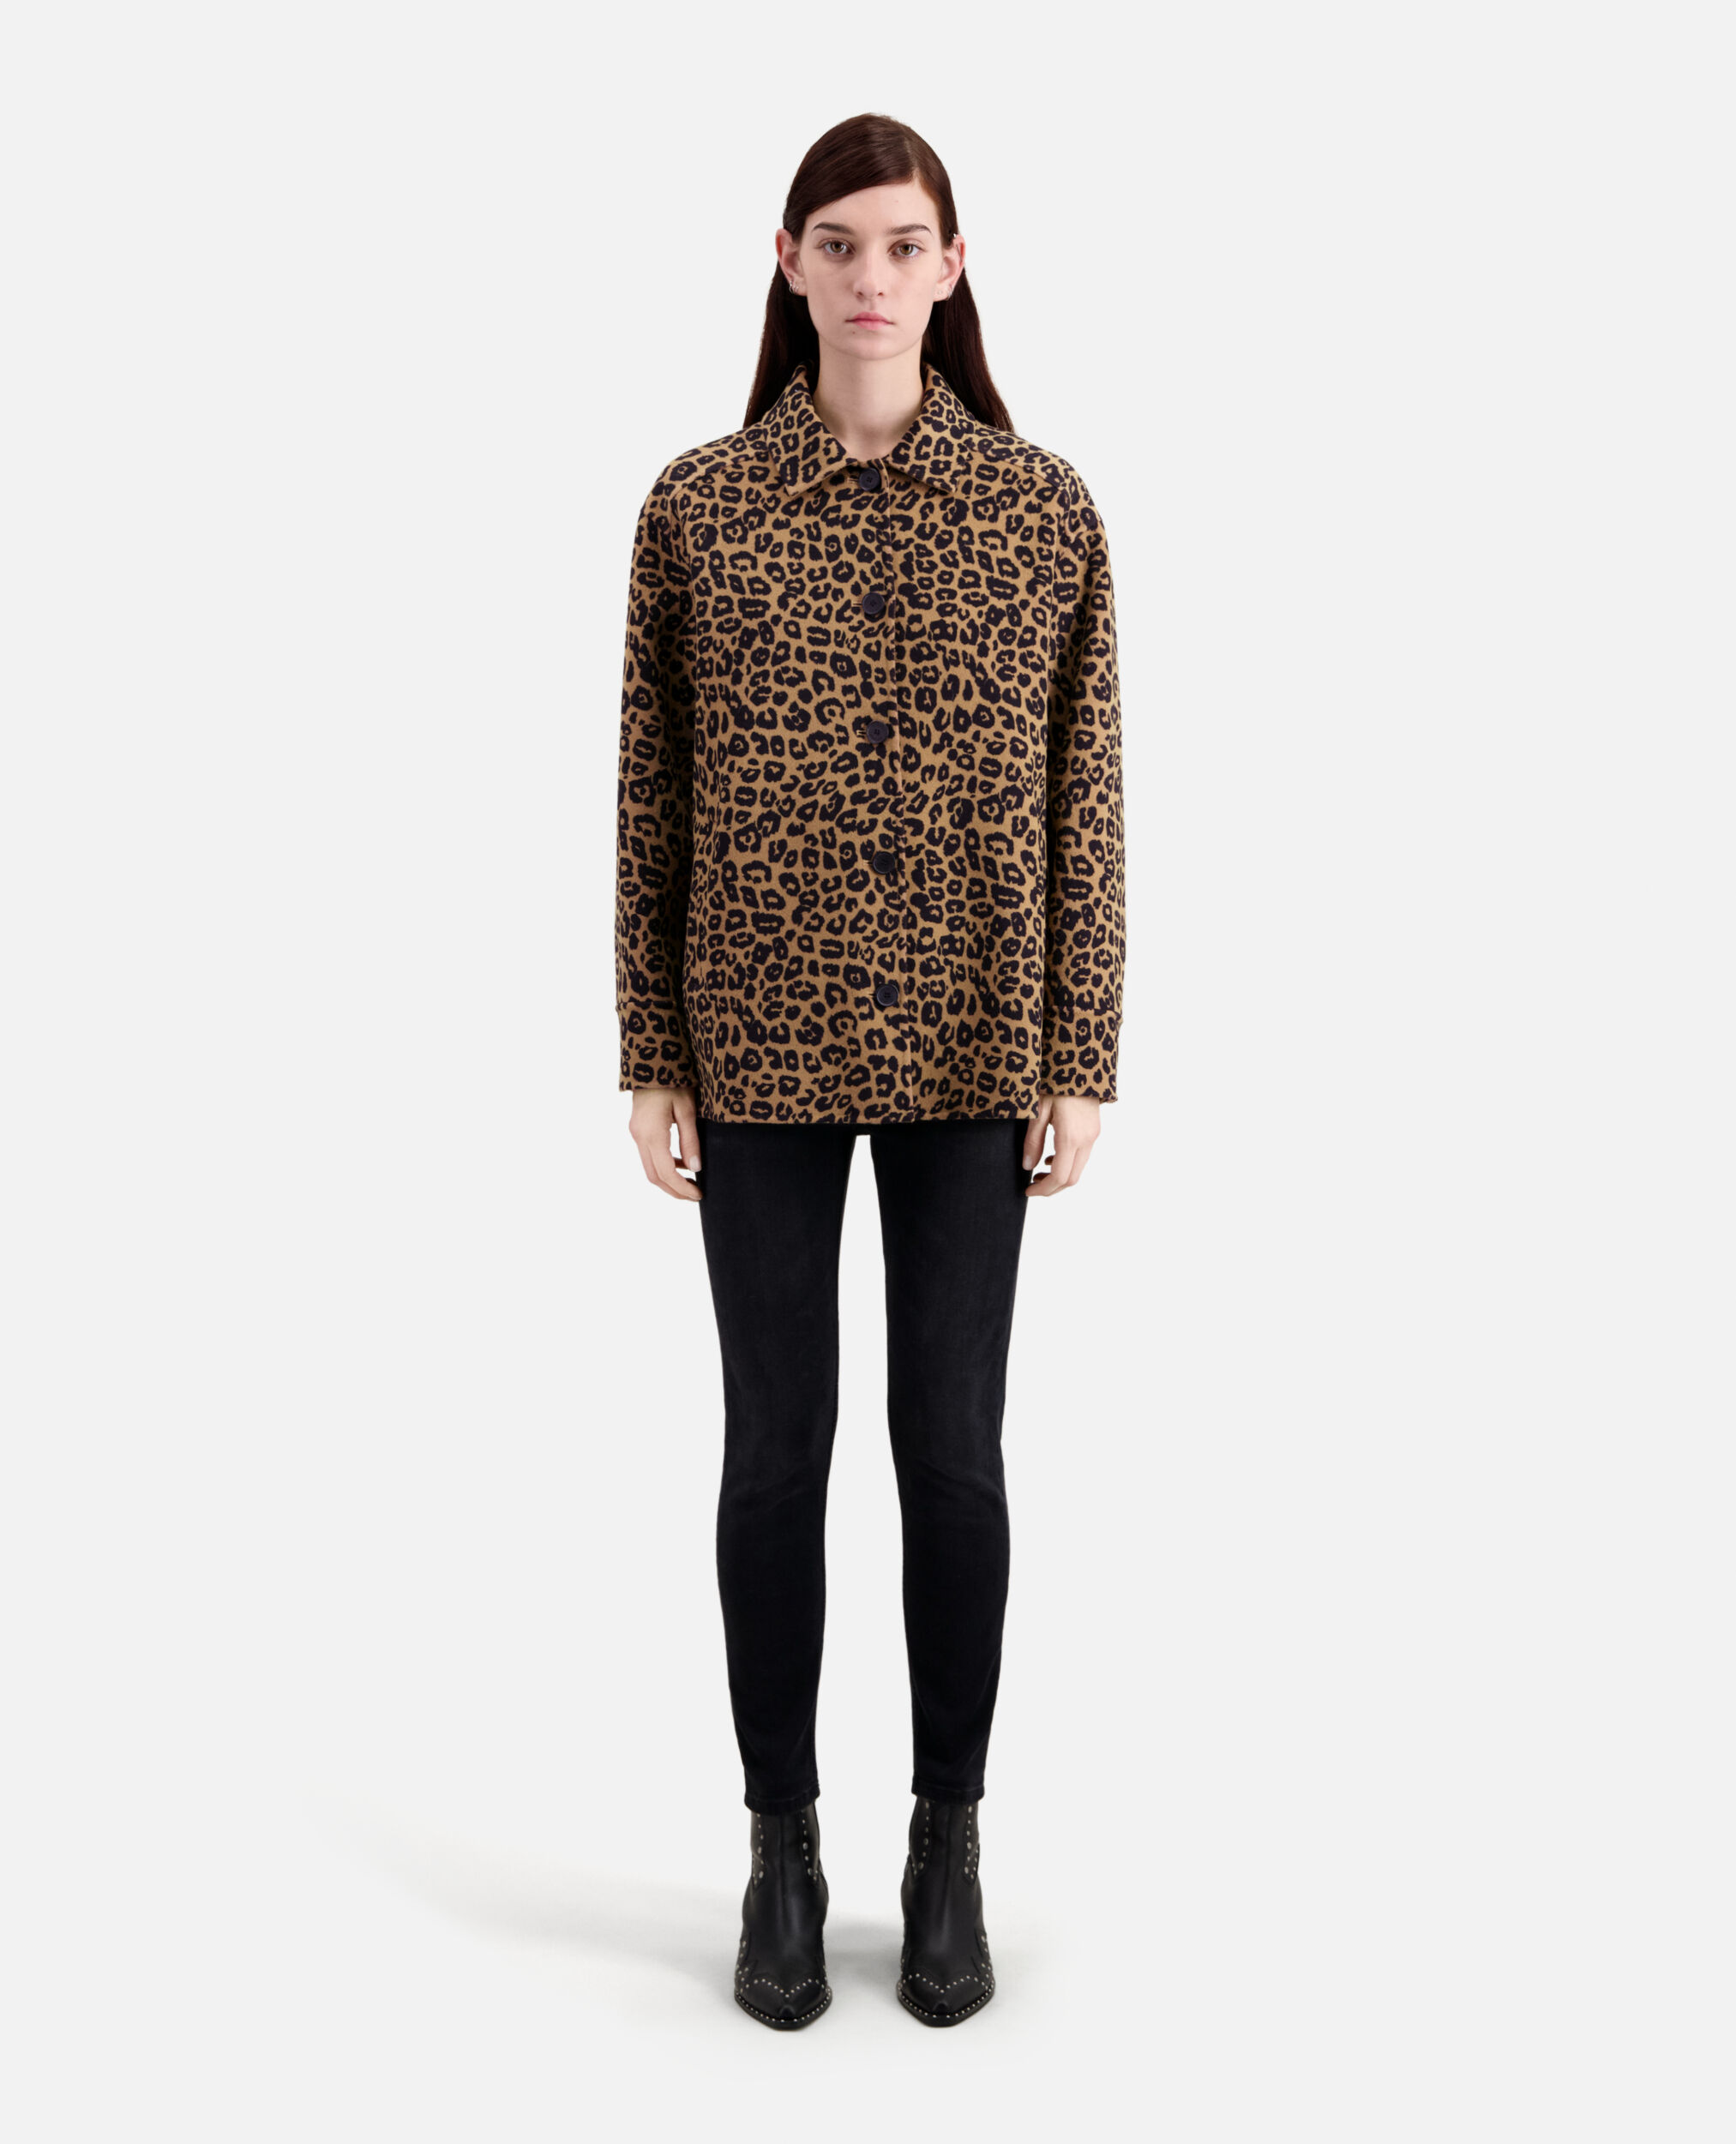 Leopard overshirt jacket in wool blend, LEOPARD, hi-res image number null